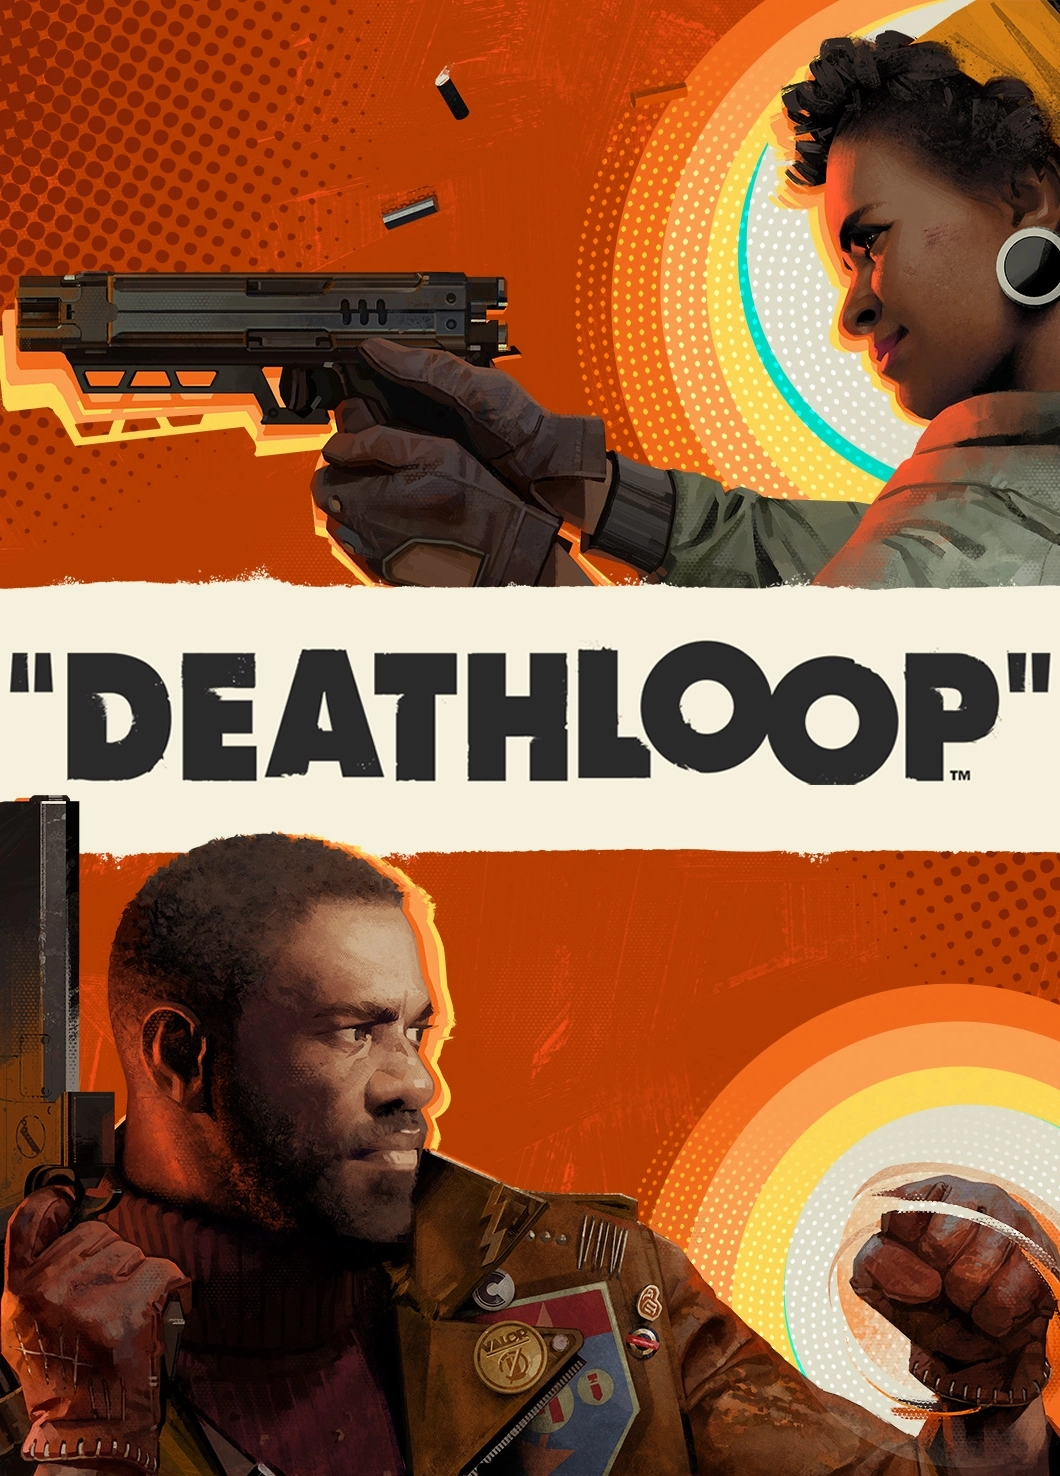 Deathloop (PC)